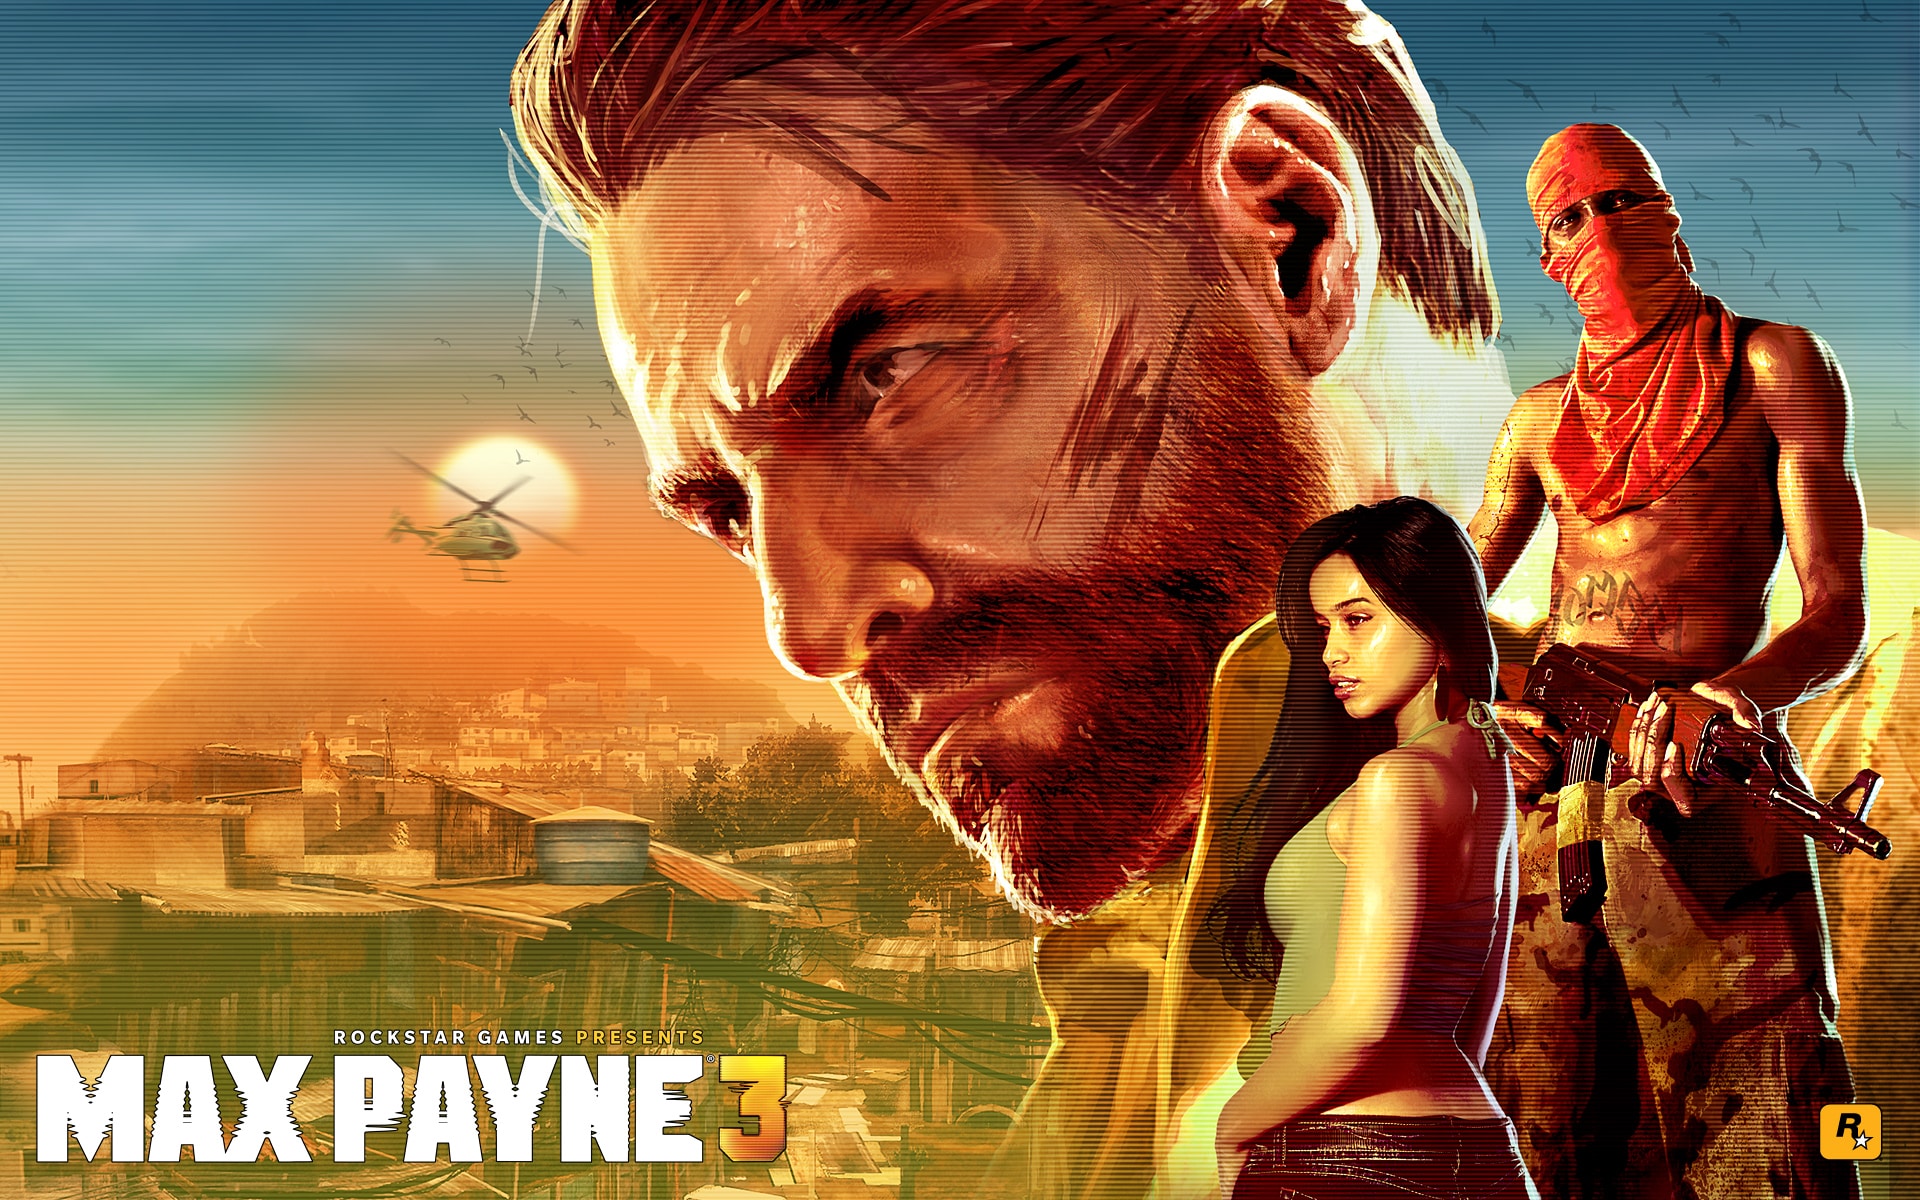 Max Payne 3 Wallpaper (HD) - 1920 x 1200 jpeg 1666kB